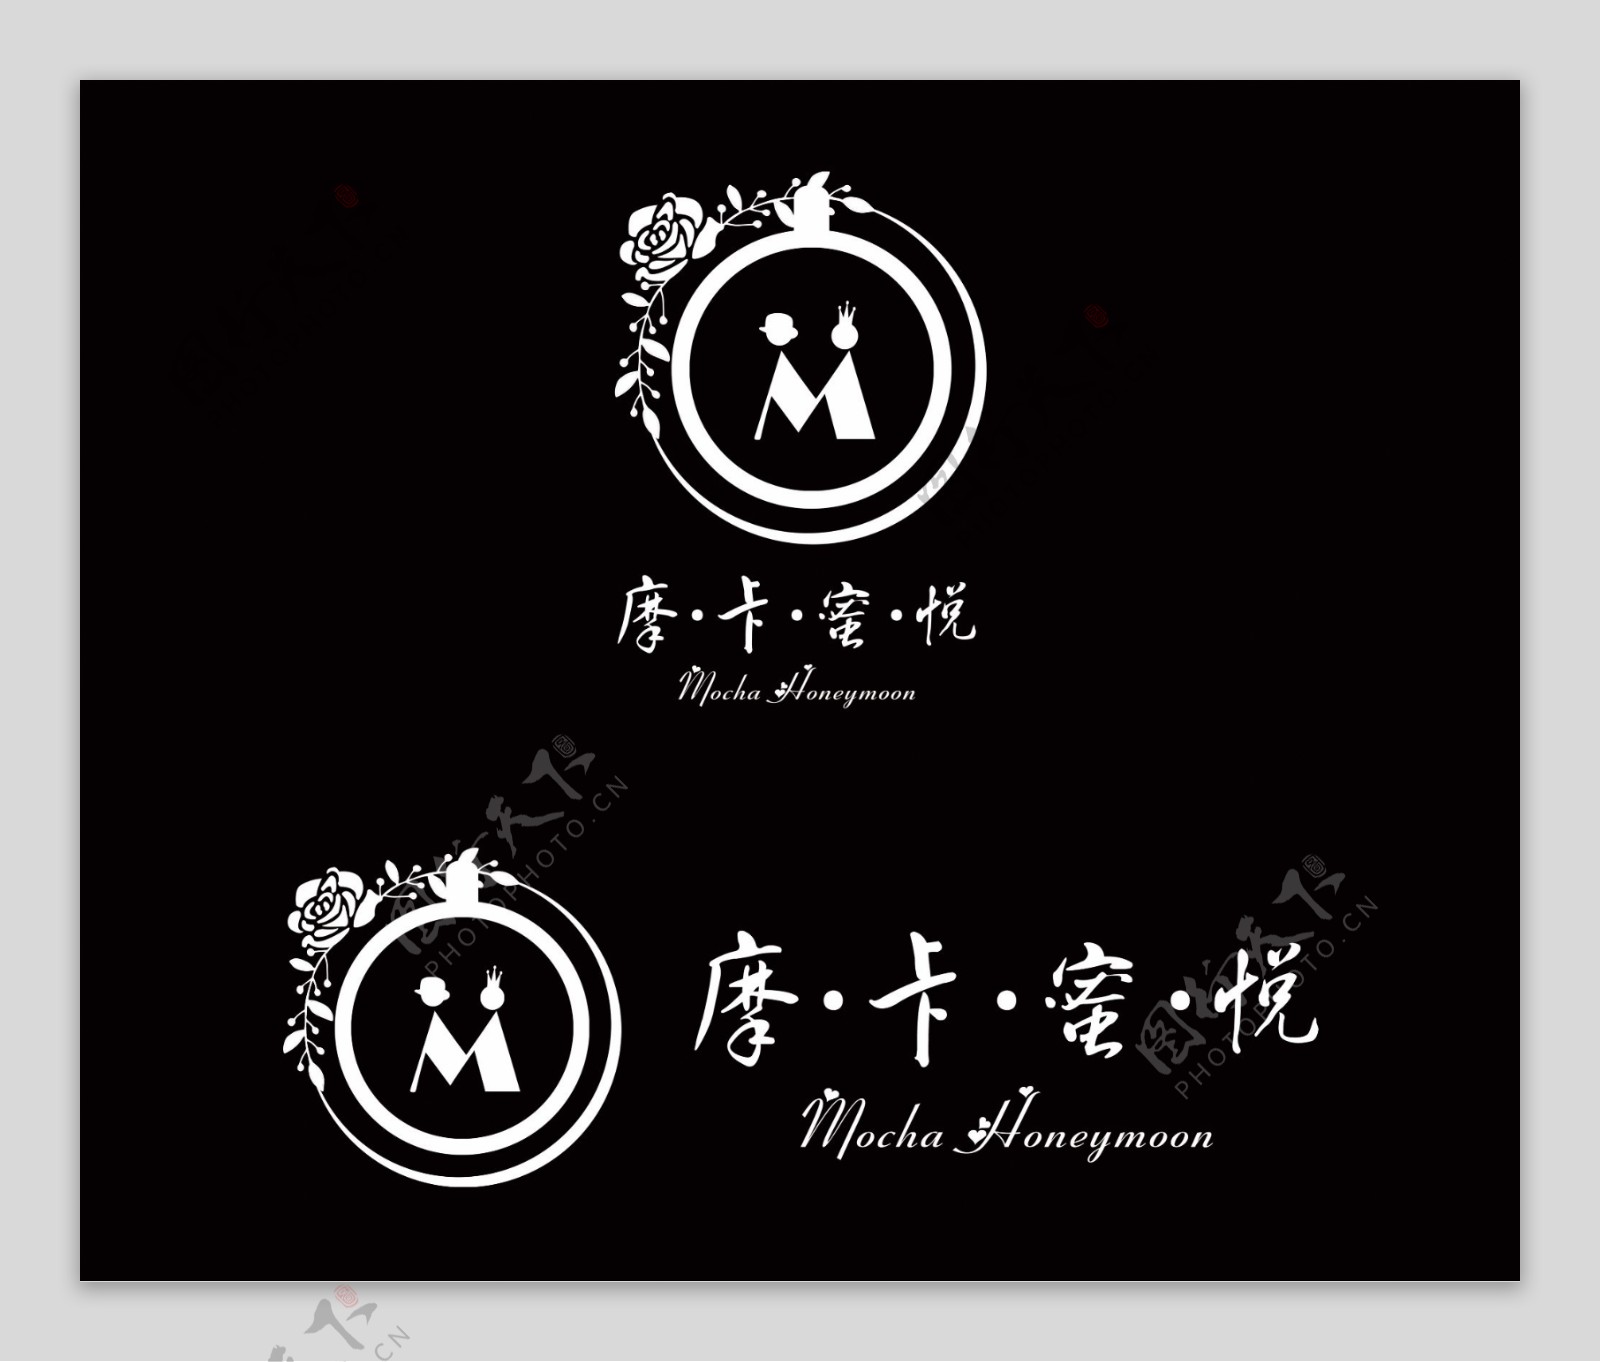 咖啡馆婚庆logo